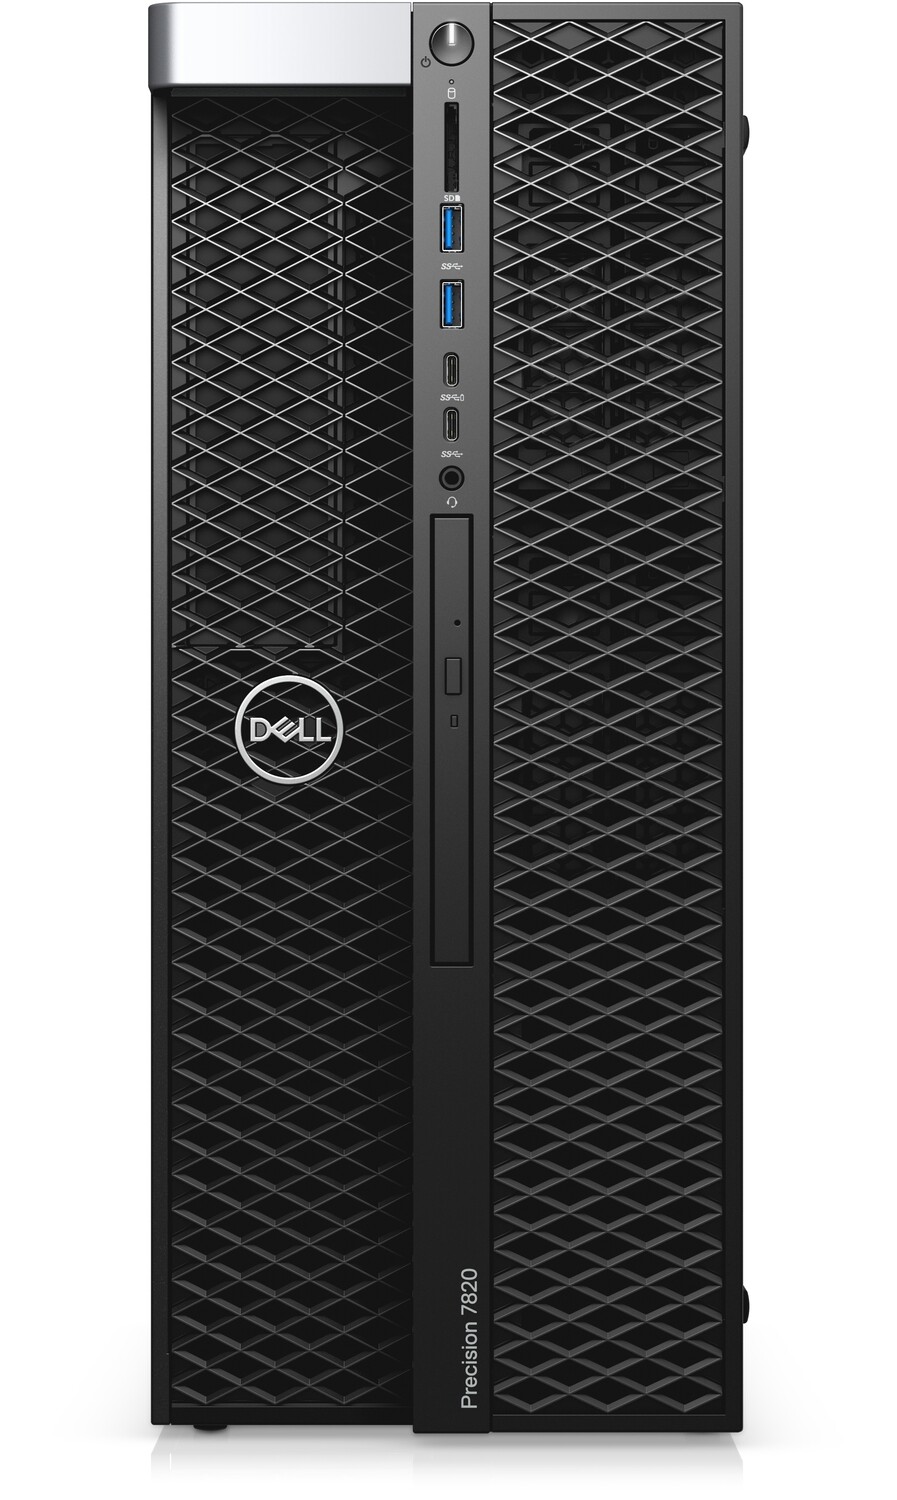 Dell Precision 7820 Tower Dual 8 Core Intel Xeon Bronze 3106 (Total 16 Cores) | 64GB | 1TB (500x2) | Quadro 2000 | Windows 10 Pro for Workstations